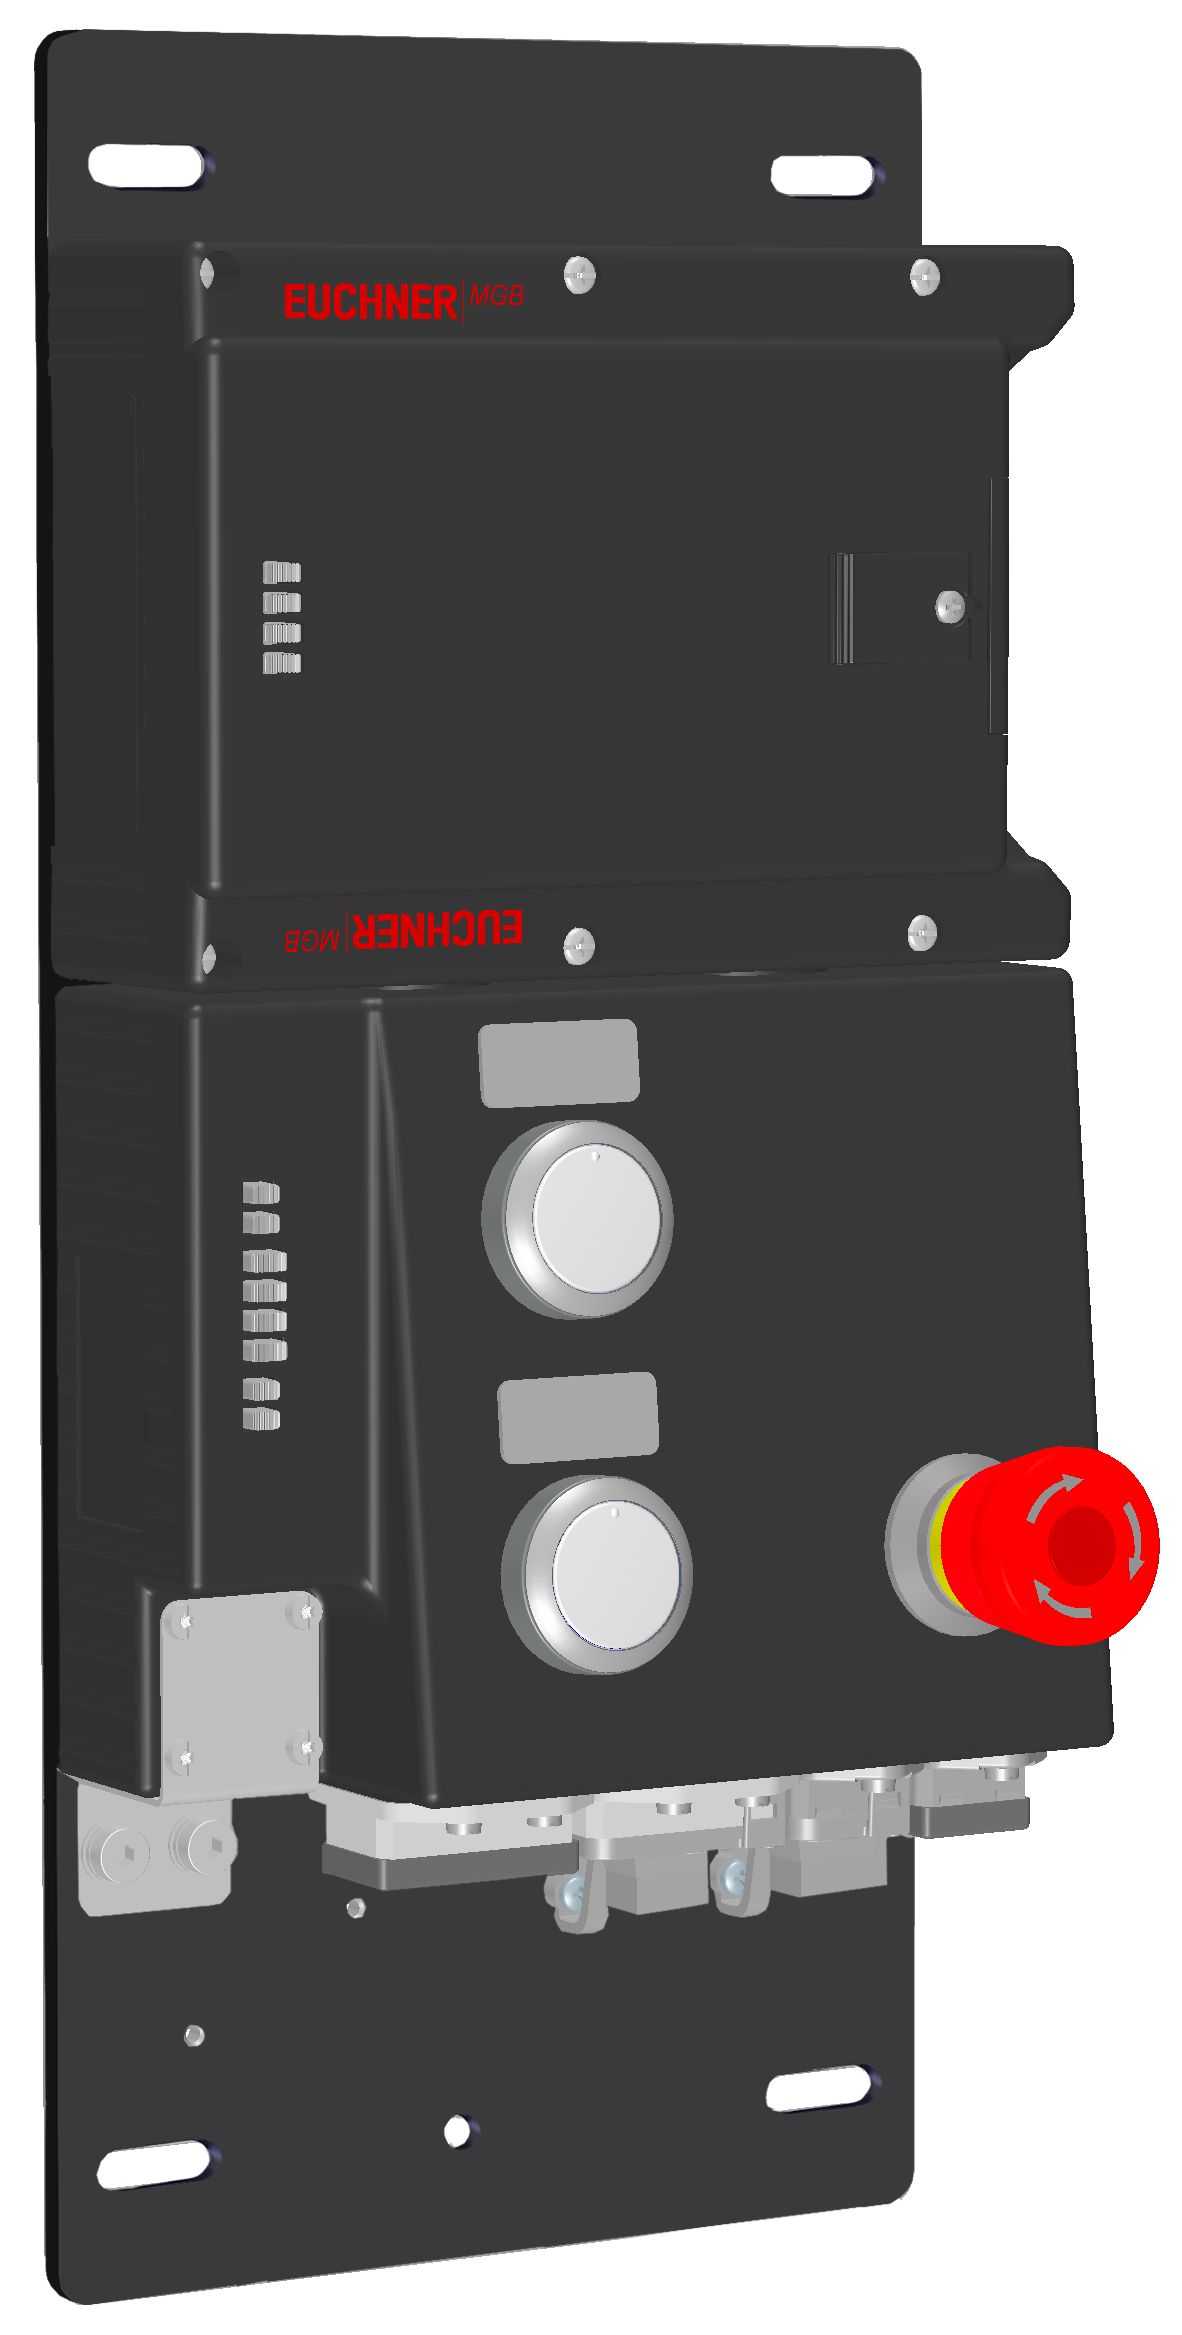 Locking modules MGB-L1B-PNA-R-121842  (Order no. 121842)